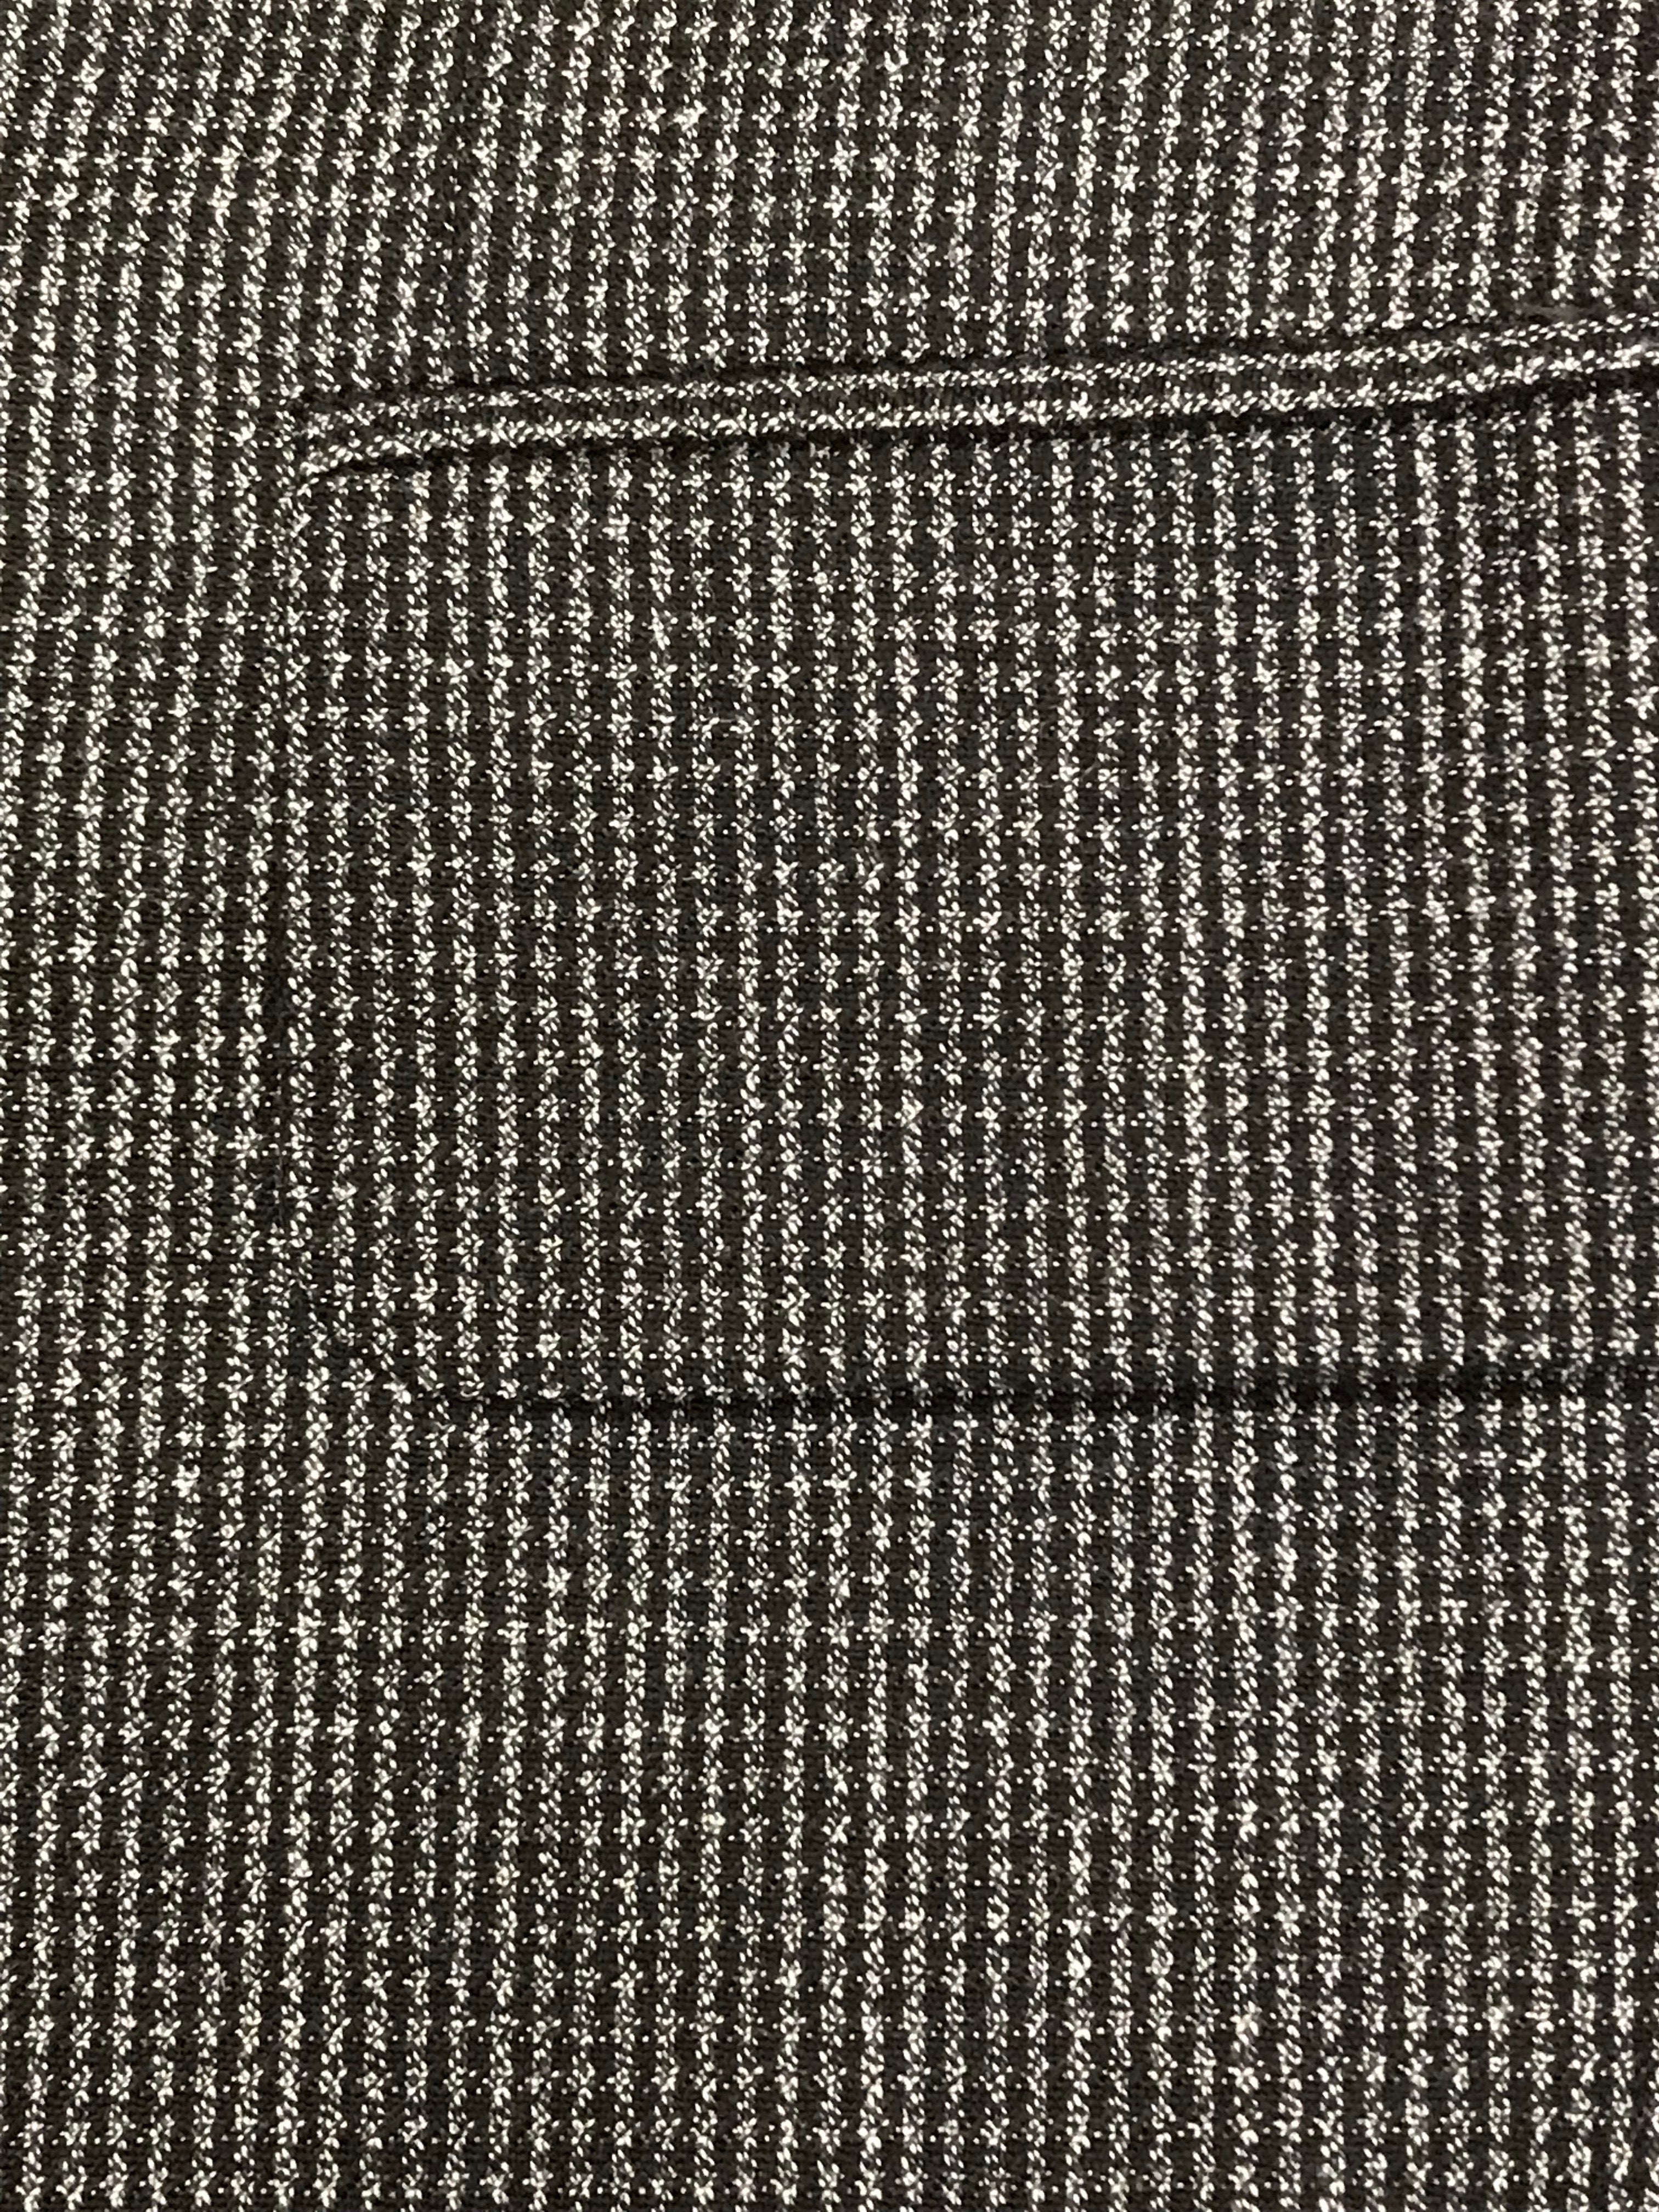 Karierte Herrenjacke Vintage Tweed Sakko Blazer  2 Reiher Gr.48